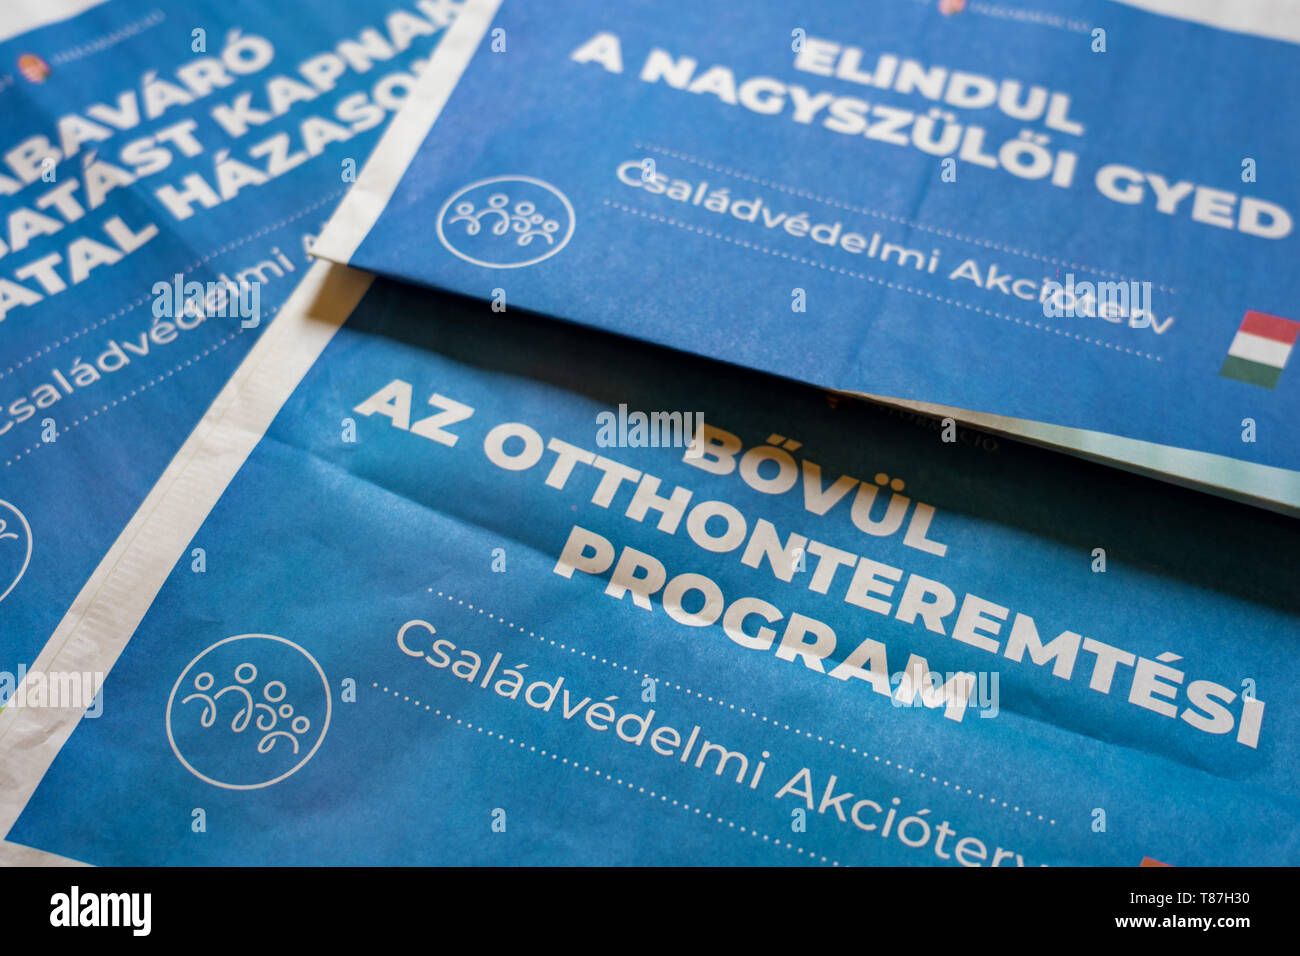 Tanakajd, Hungary - 05. 11. 2019: Hungarian family saving policy program campaign Stock Photo